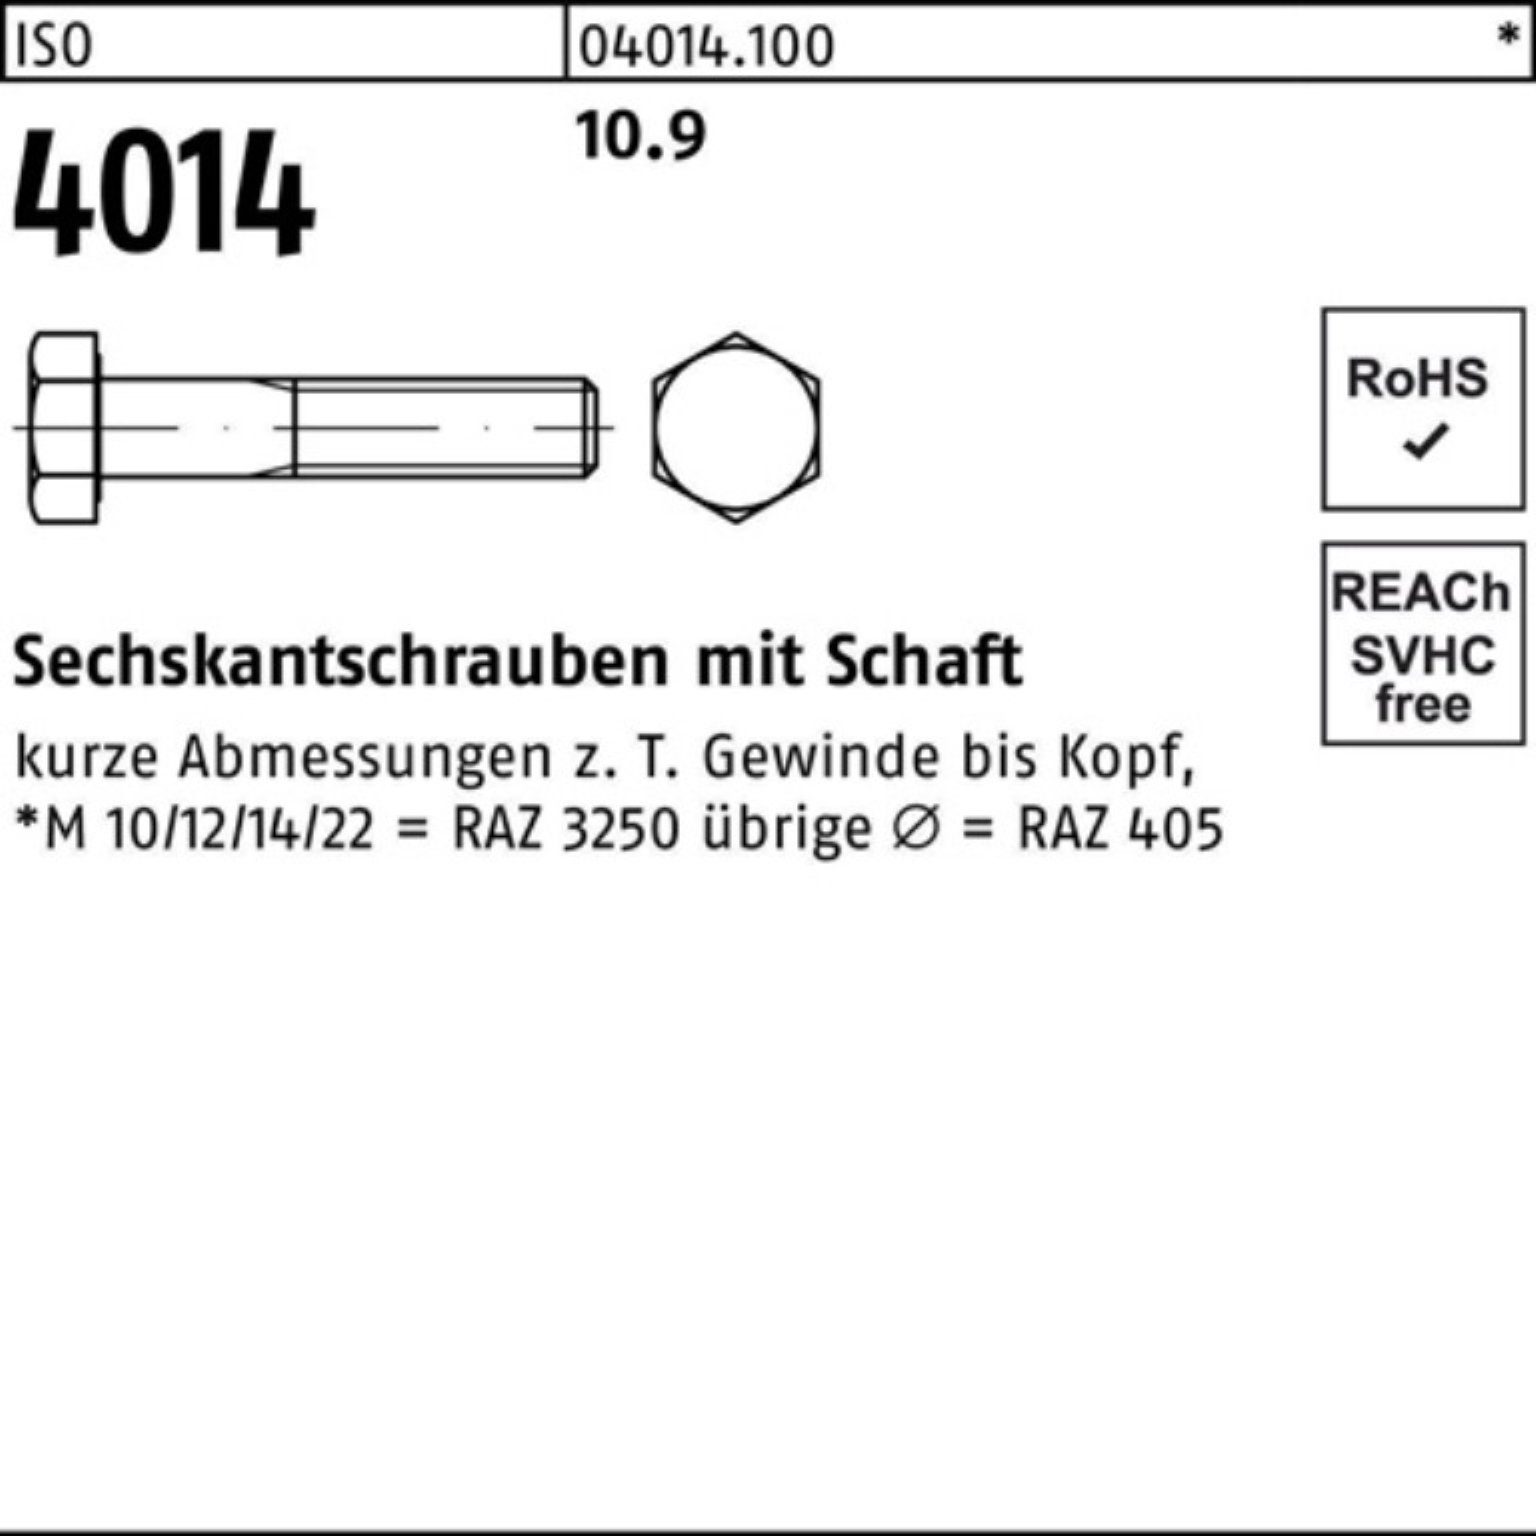 ISO Sechskantschraube Stück 100er 4014 IS Bufab Schaft M45x 320 10.9 Sechskantschraube Pack 1